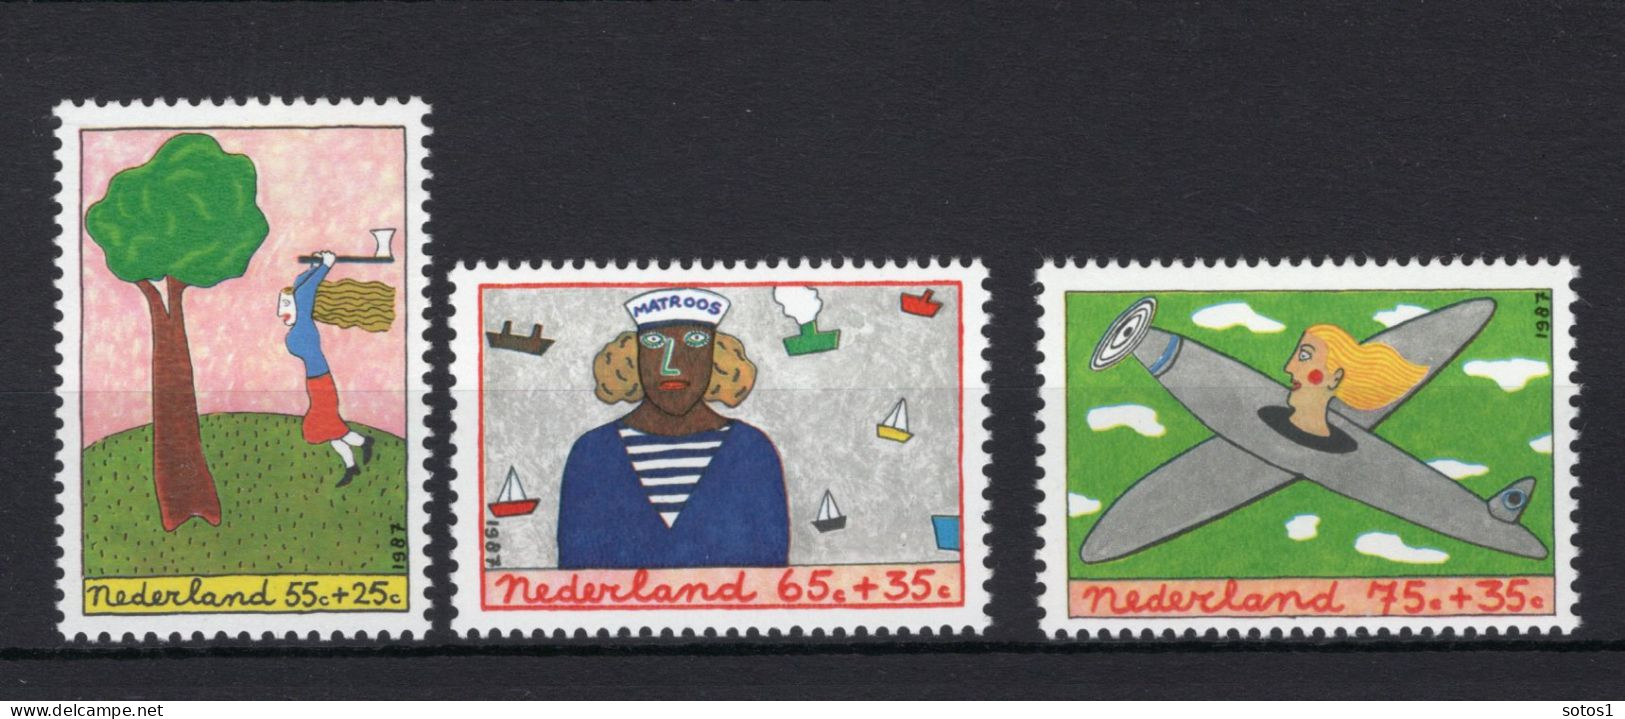 NEDERLAND 1387/1389 MNH 1987 - Kinderzegels, Kind En Beroep -2 - Nuovi